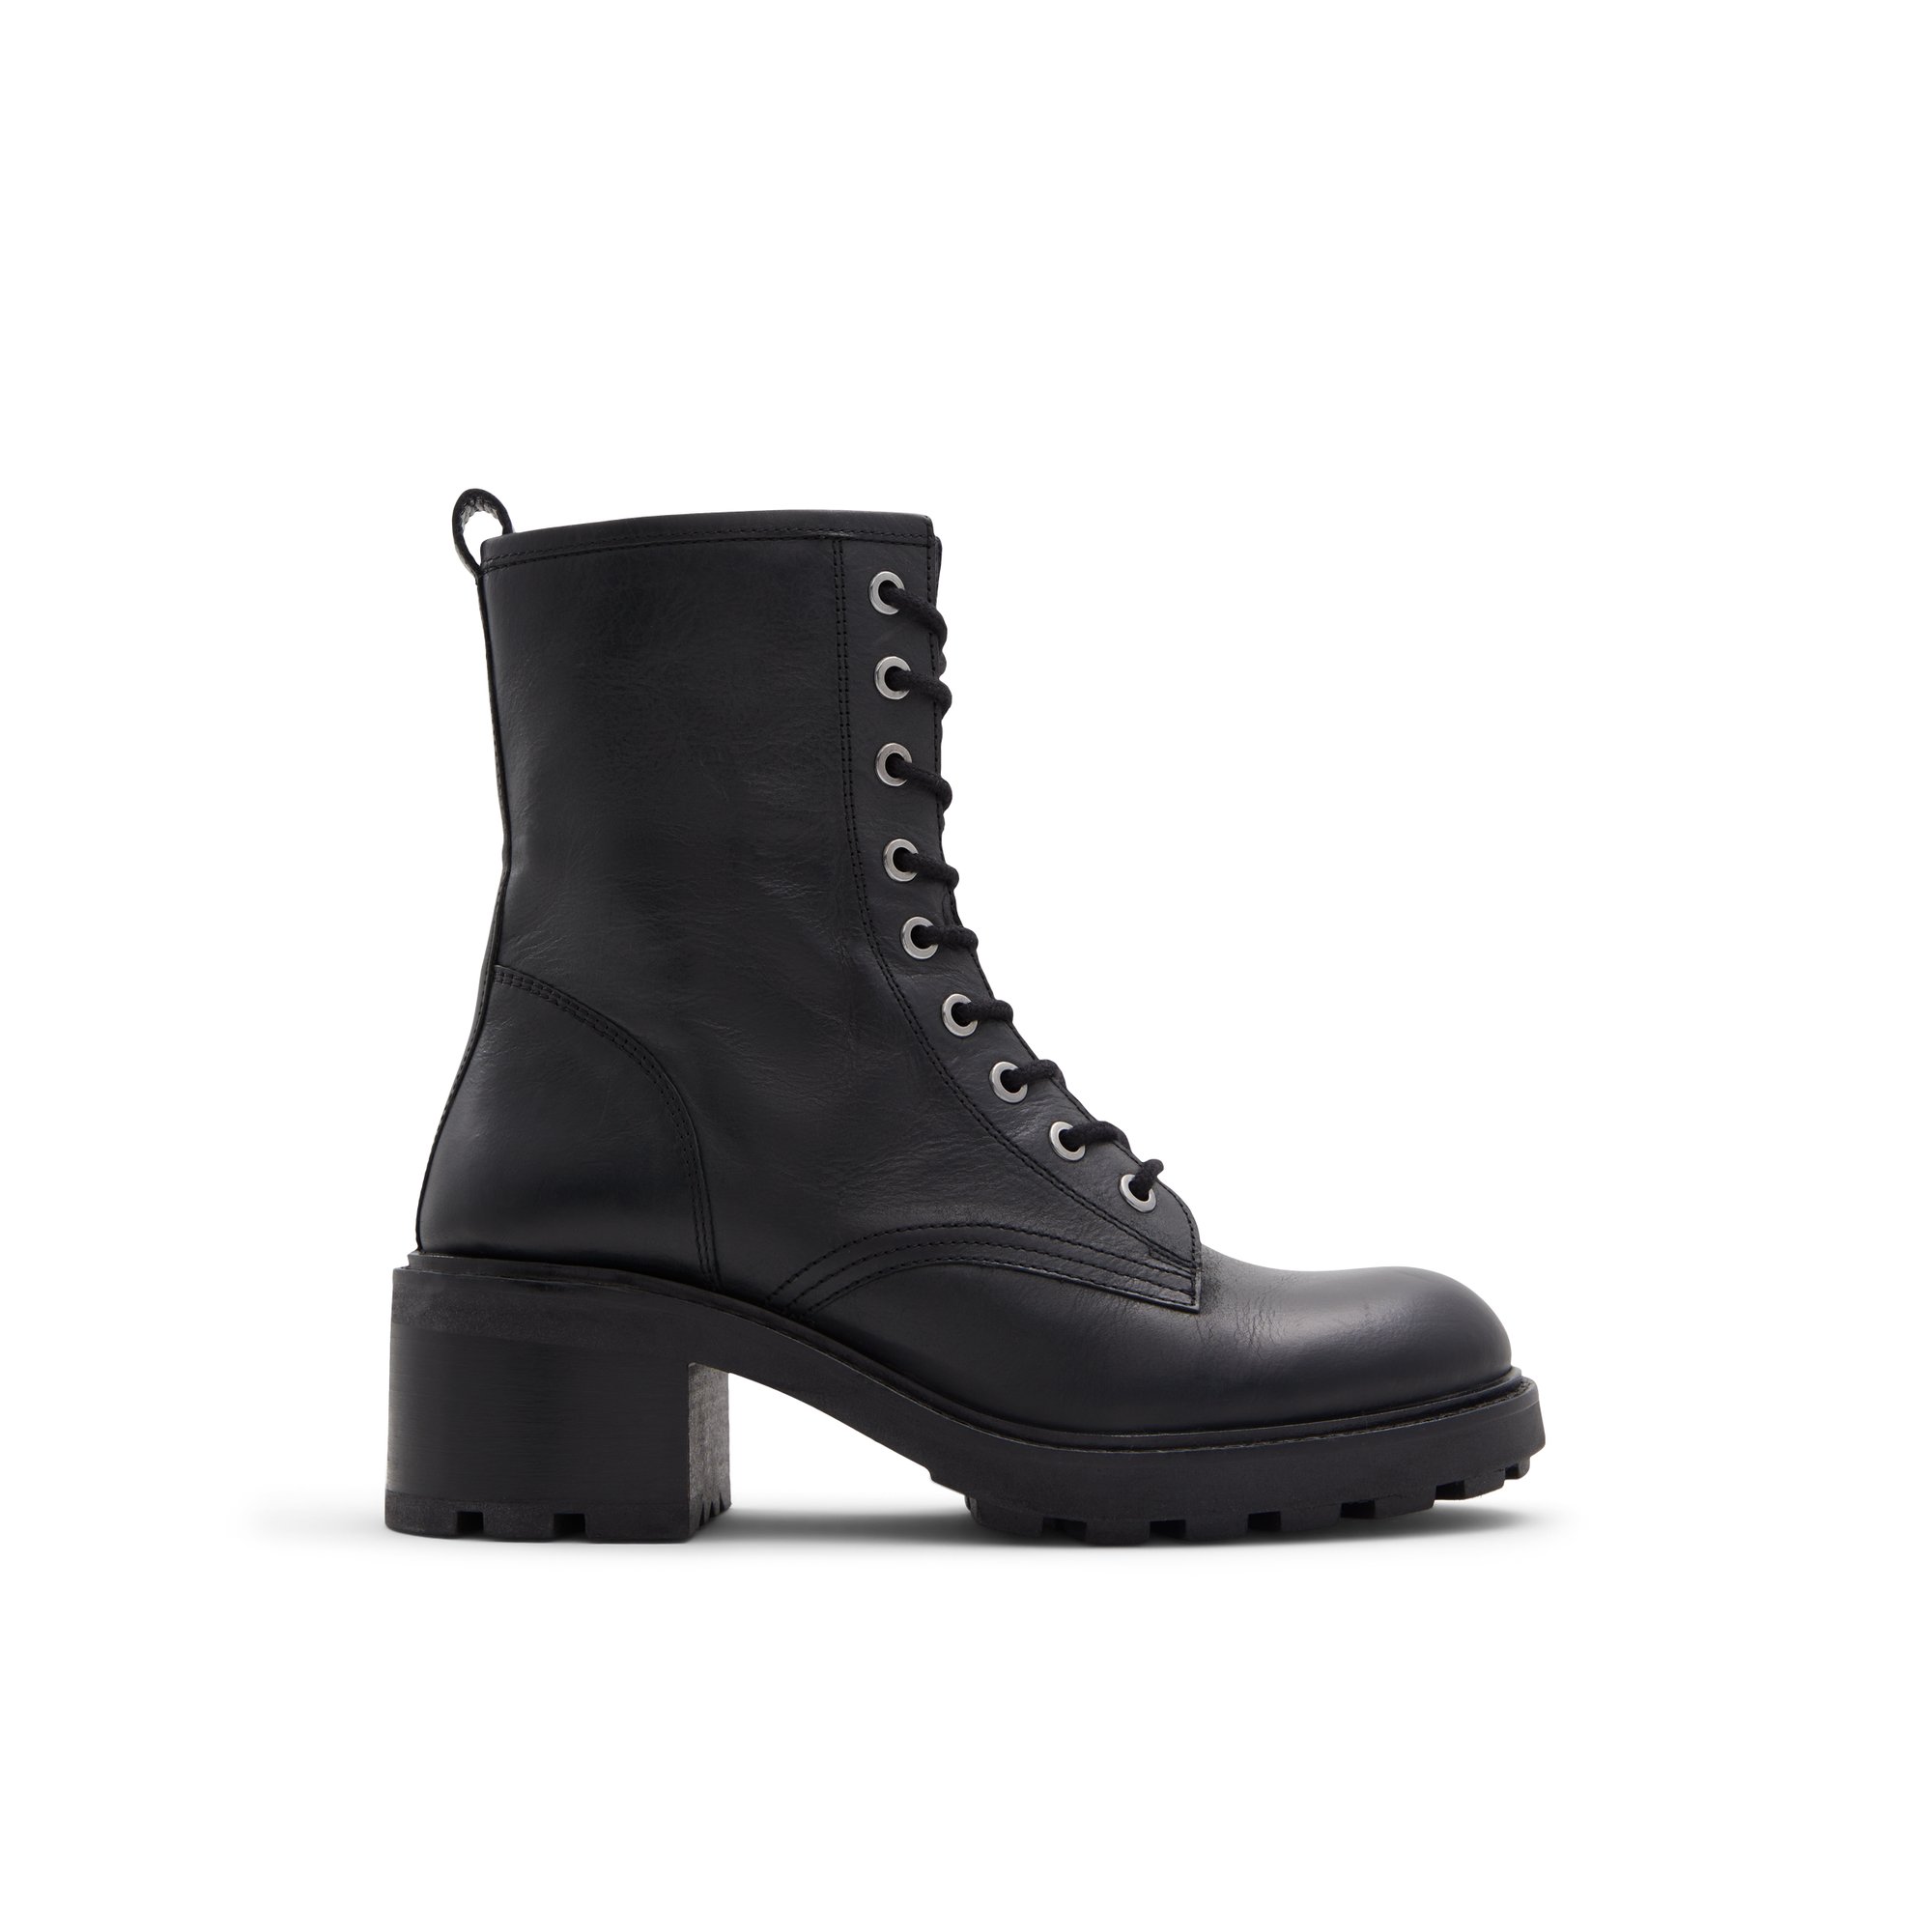 ALDO Meredelden - Women's Boots Combat - Black